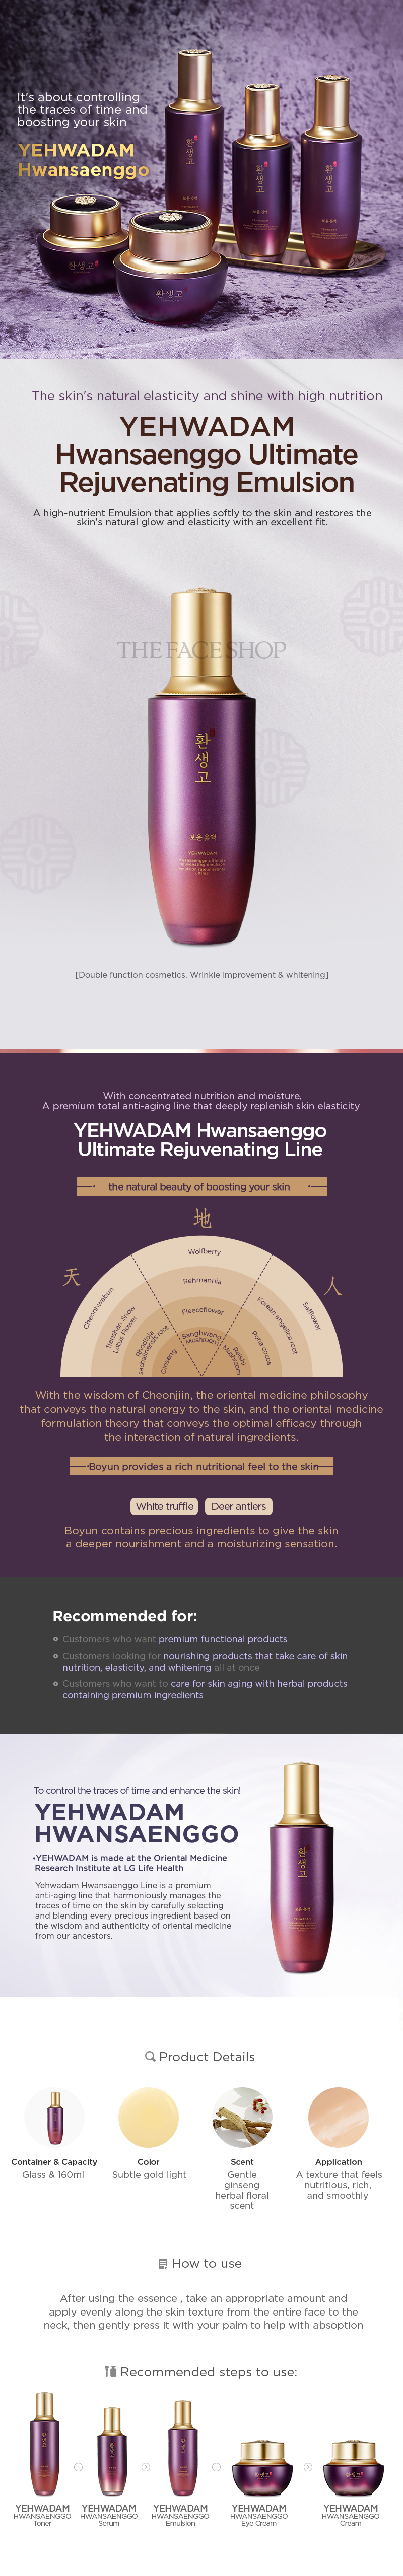 Yehwadam Hwansaenggo Ultimate Rejuvenating Emulsion